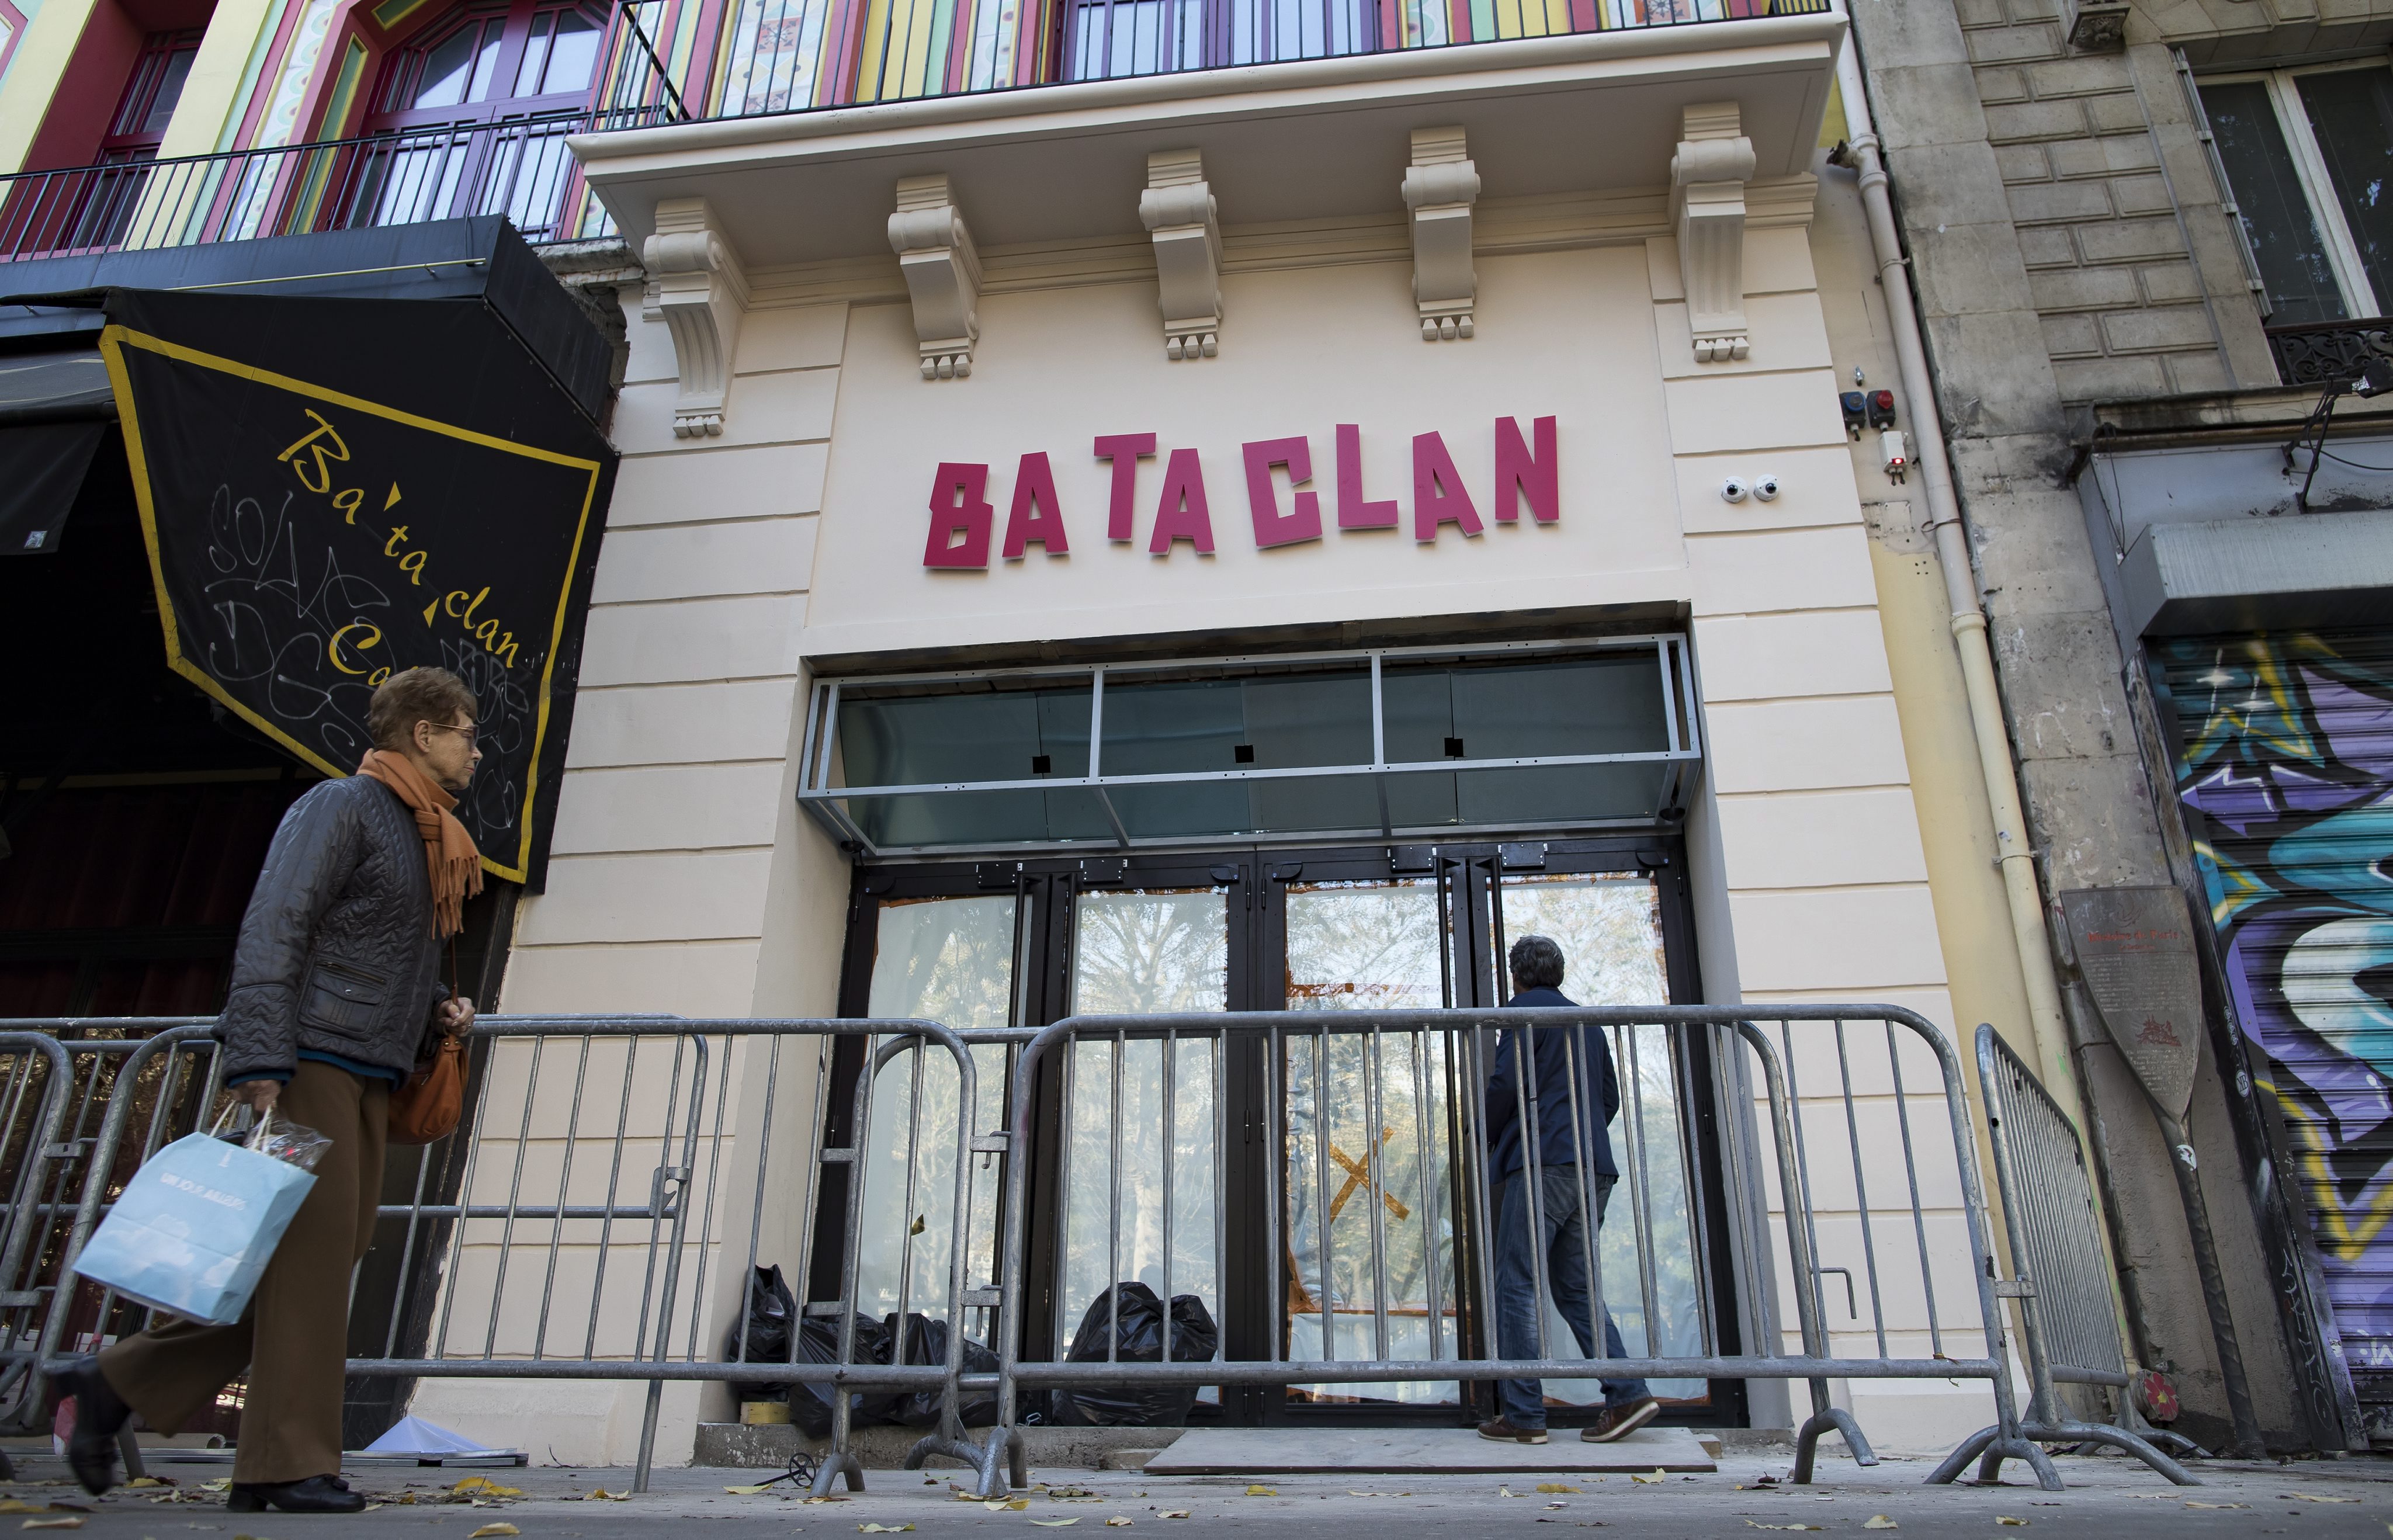 Ο Στινγκ ανοίγει με συναυλία το Bataclan στην επέτειο των επιθέσεων στο Παρίσι